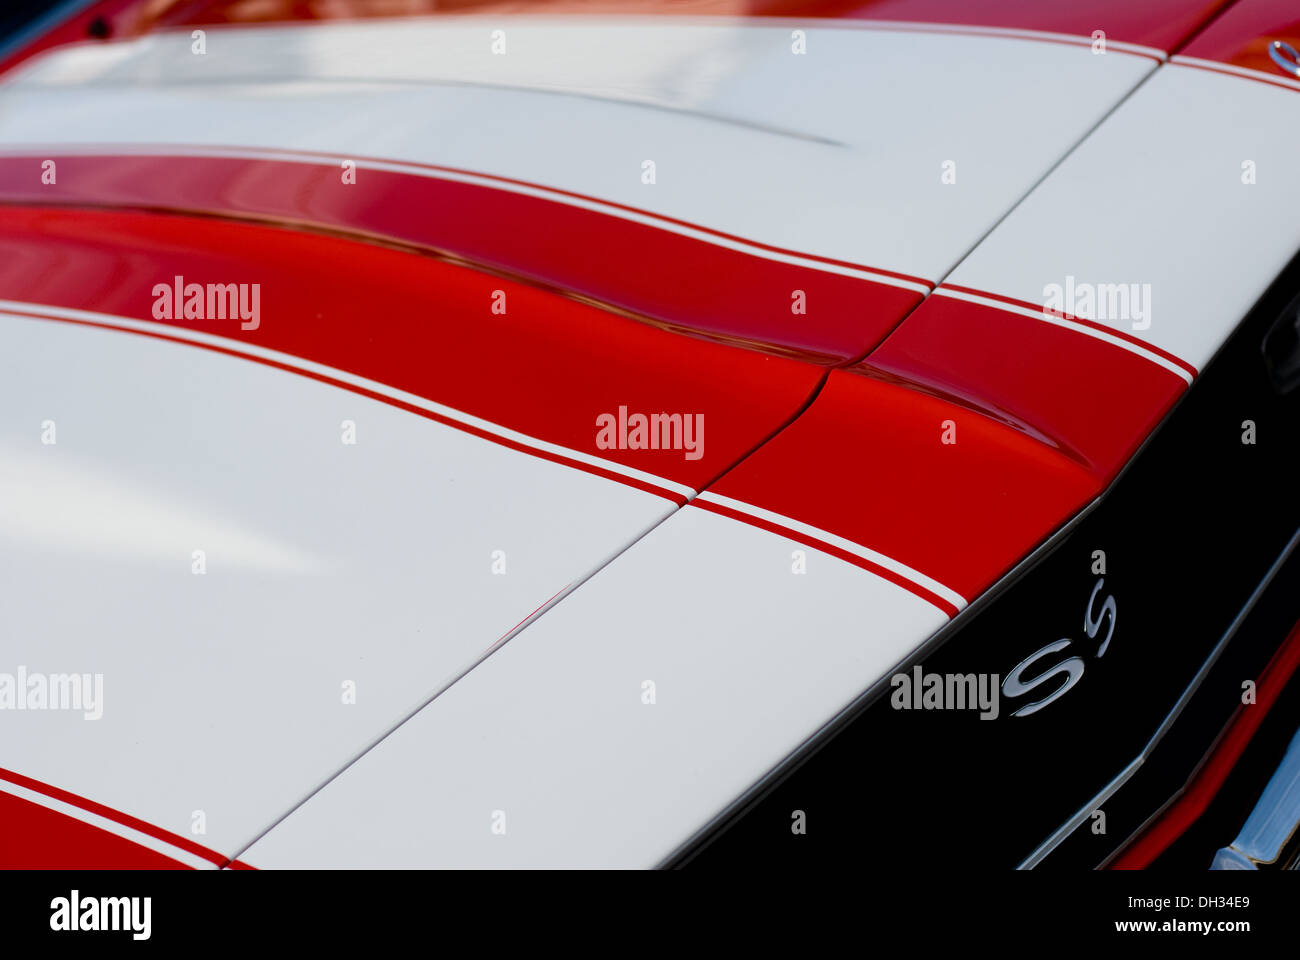 Die Haube von einem roten Chevy Super Sport Camaro mit weißen Rennstreifen. Stockfoto